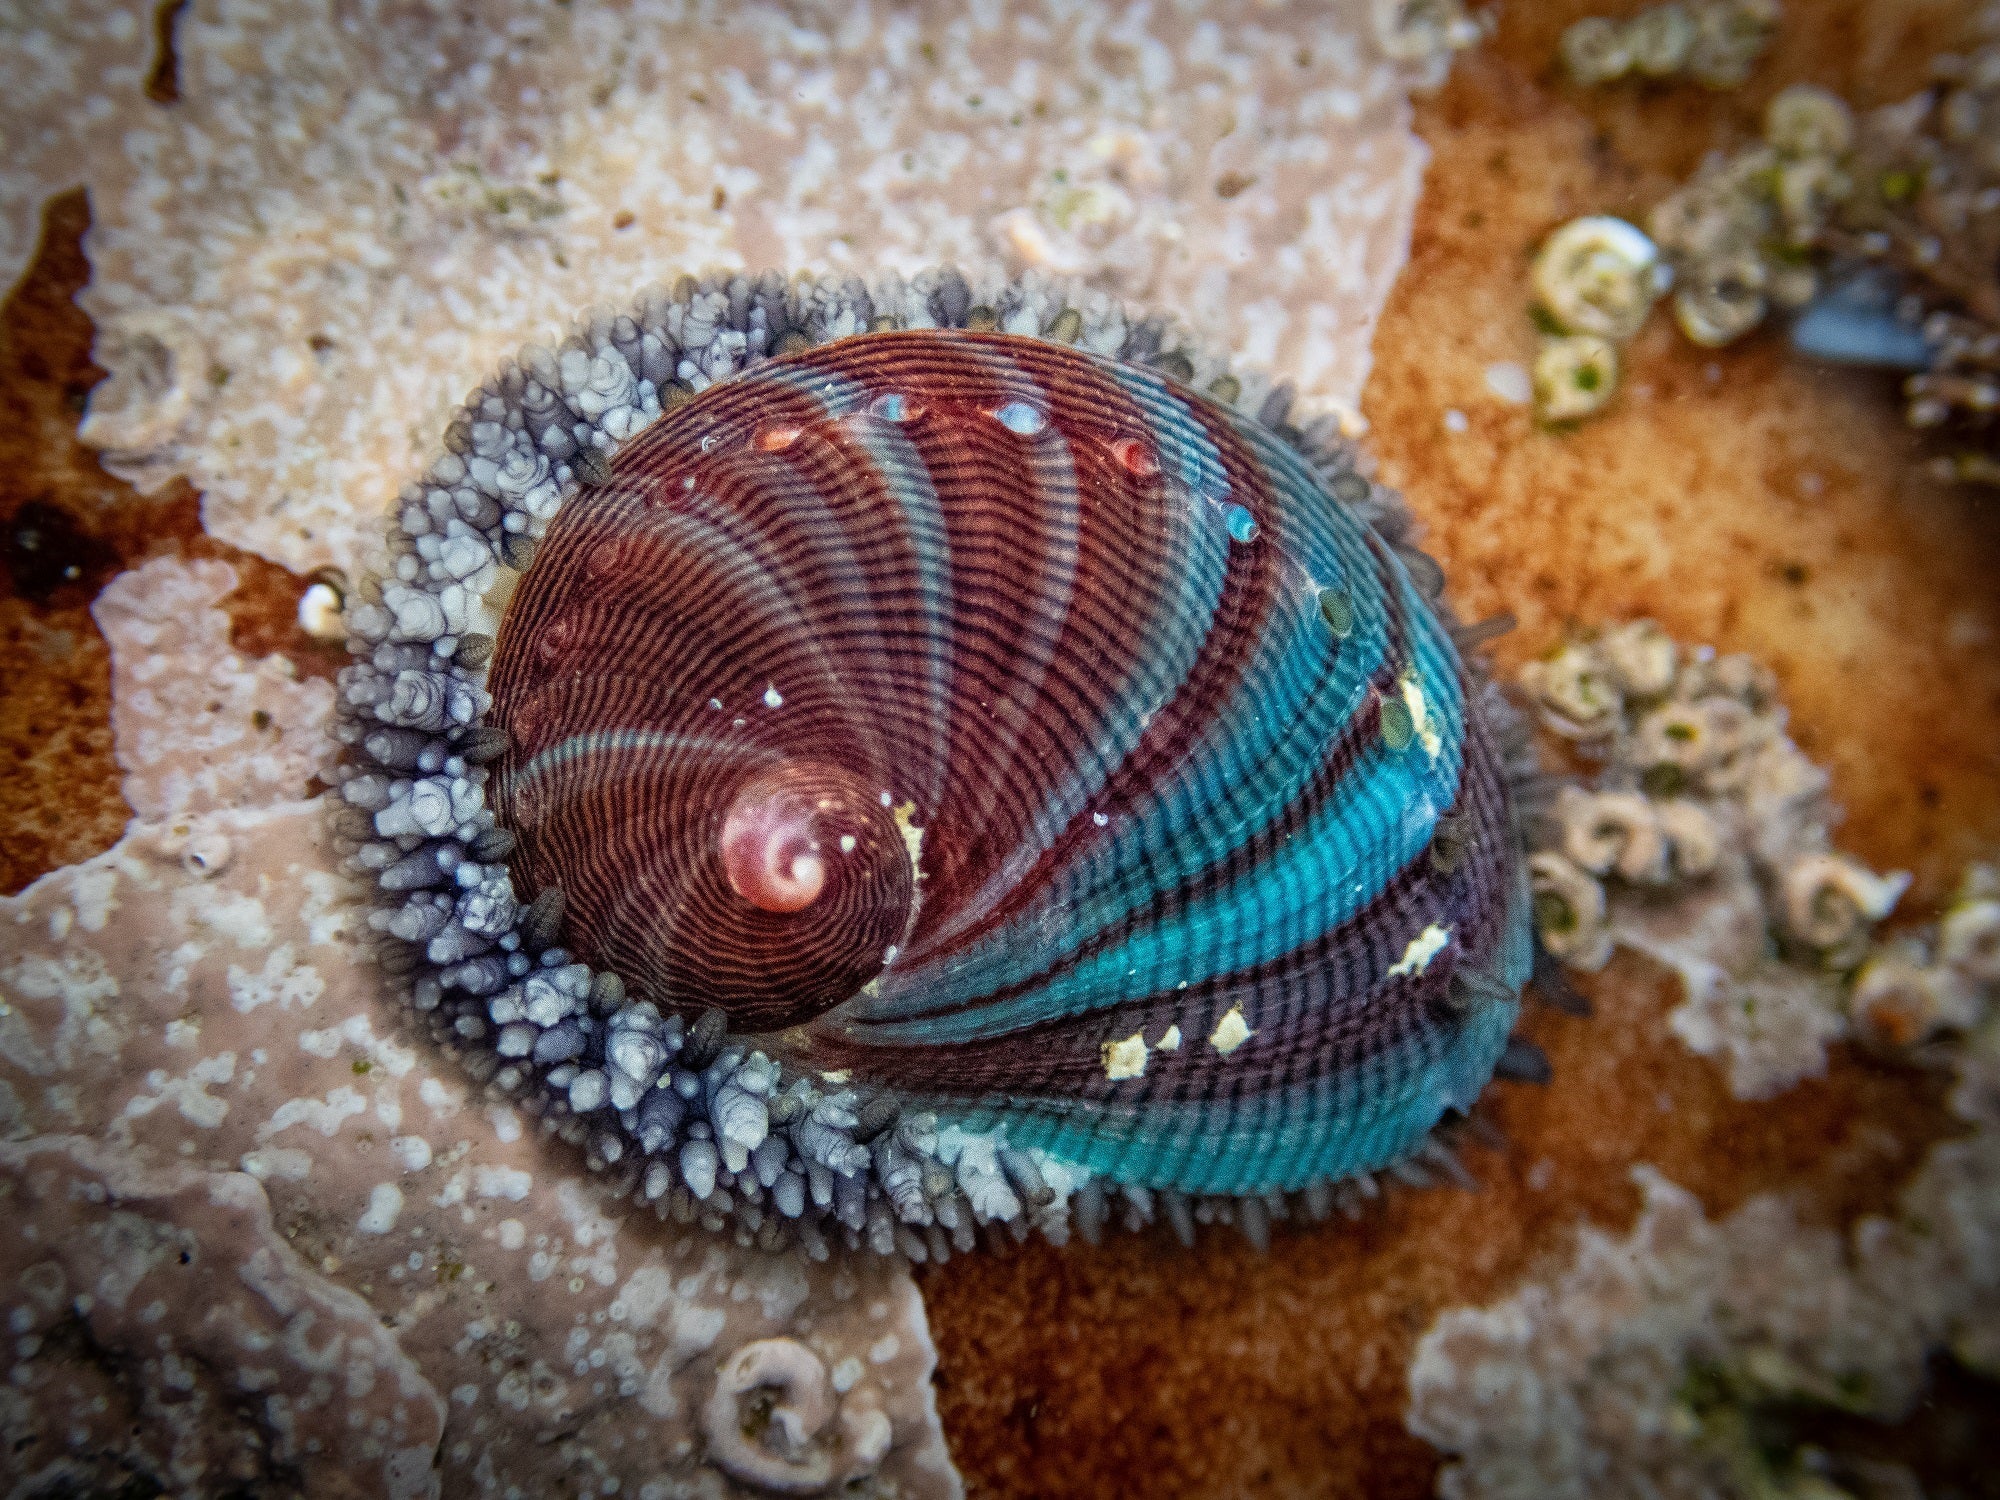 通过观察幼龄鲍鱼壳上的颜色图案，就可以知道它吃了什么。